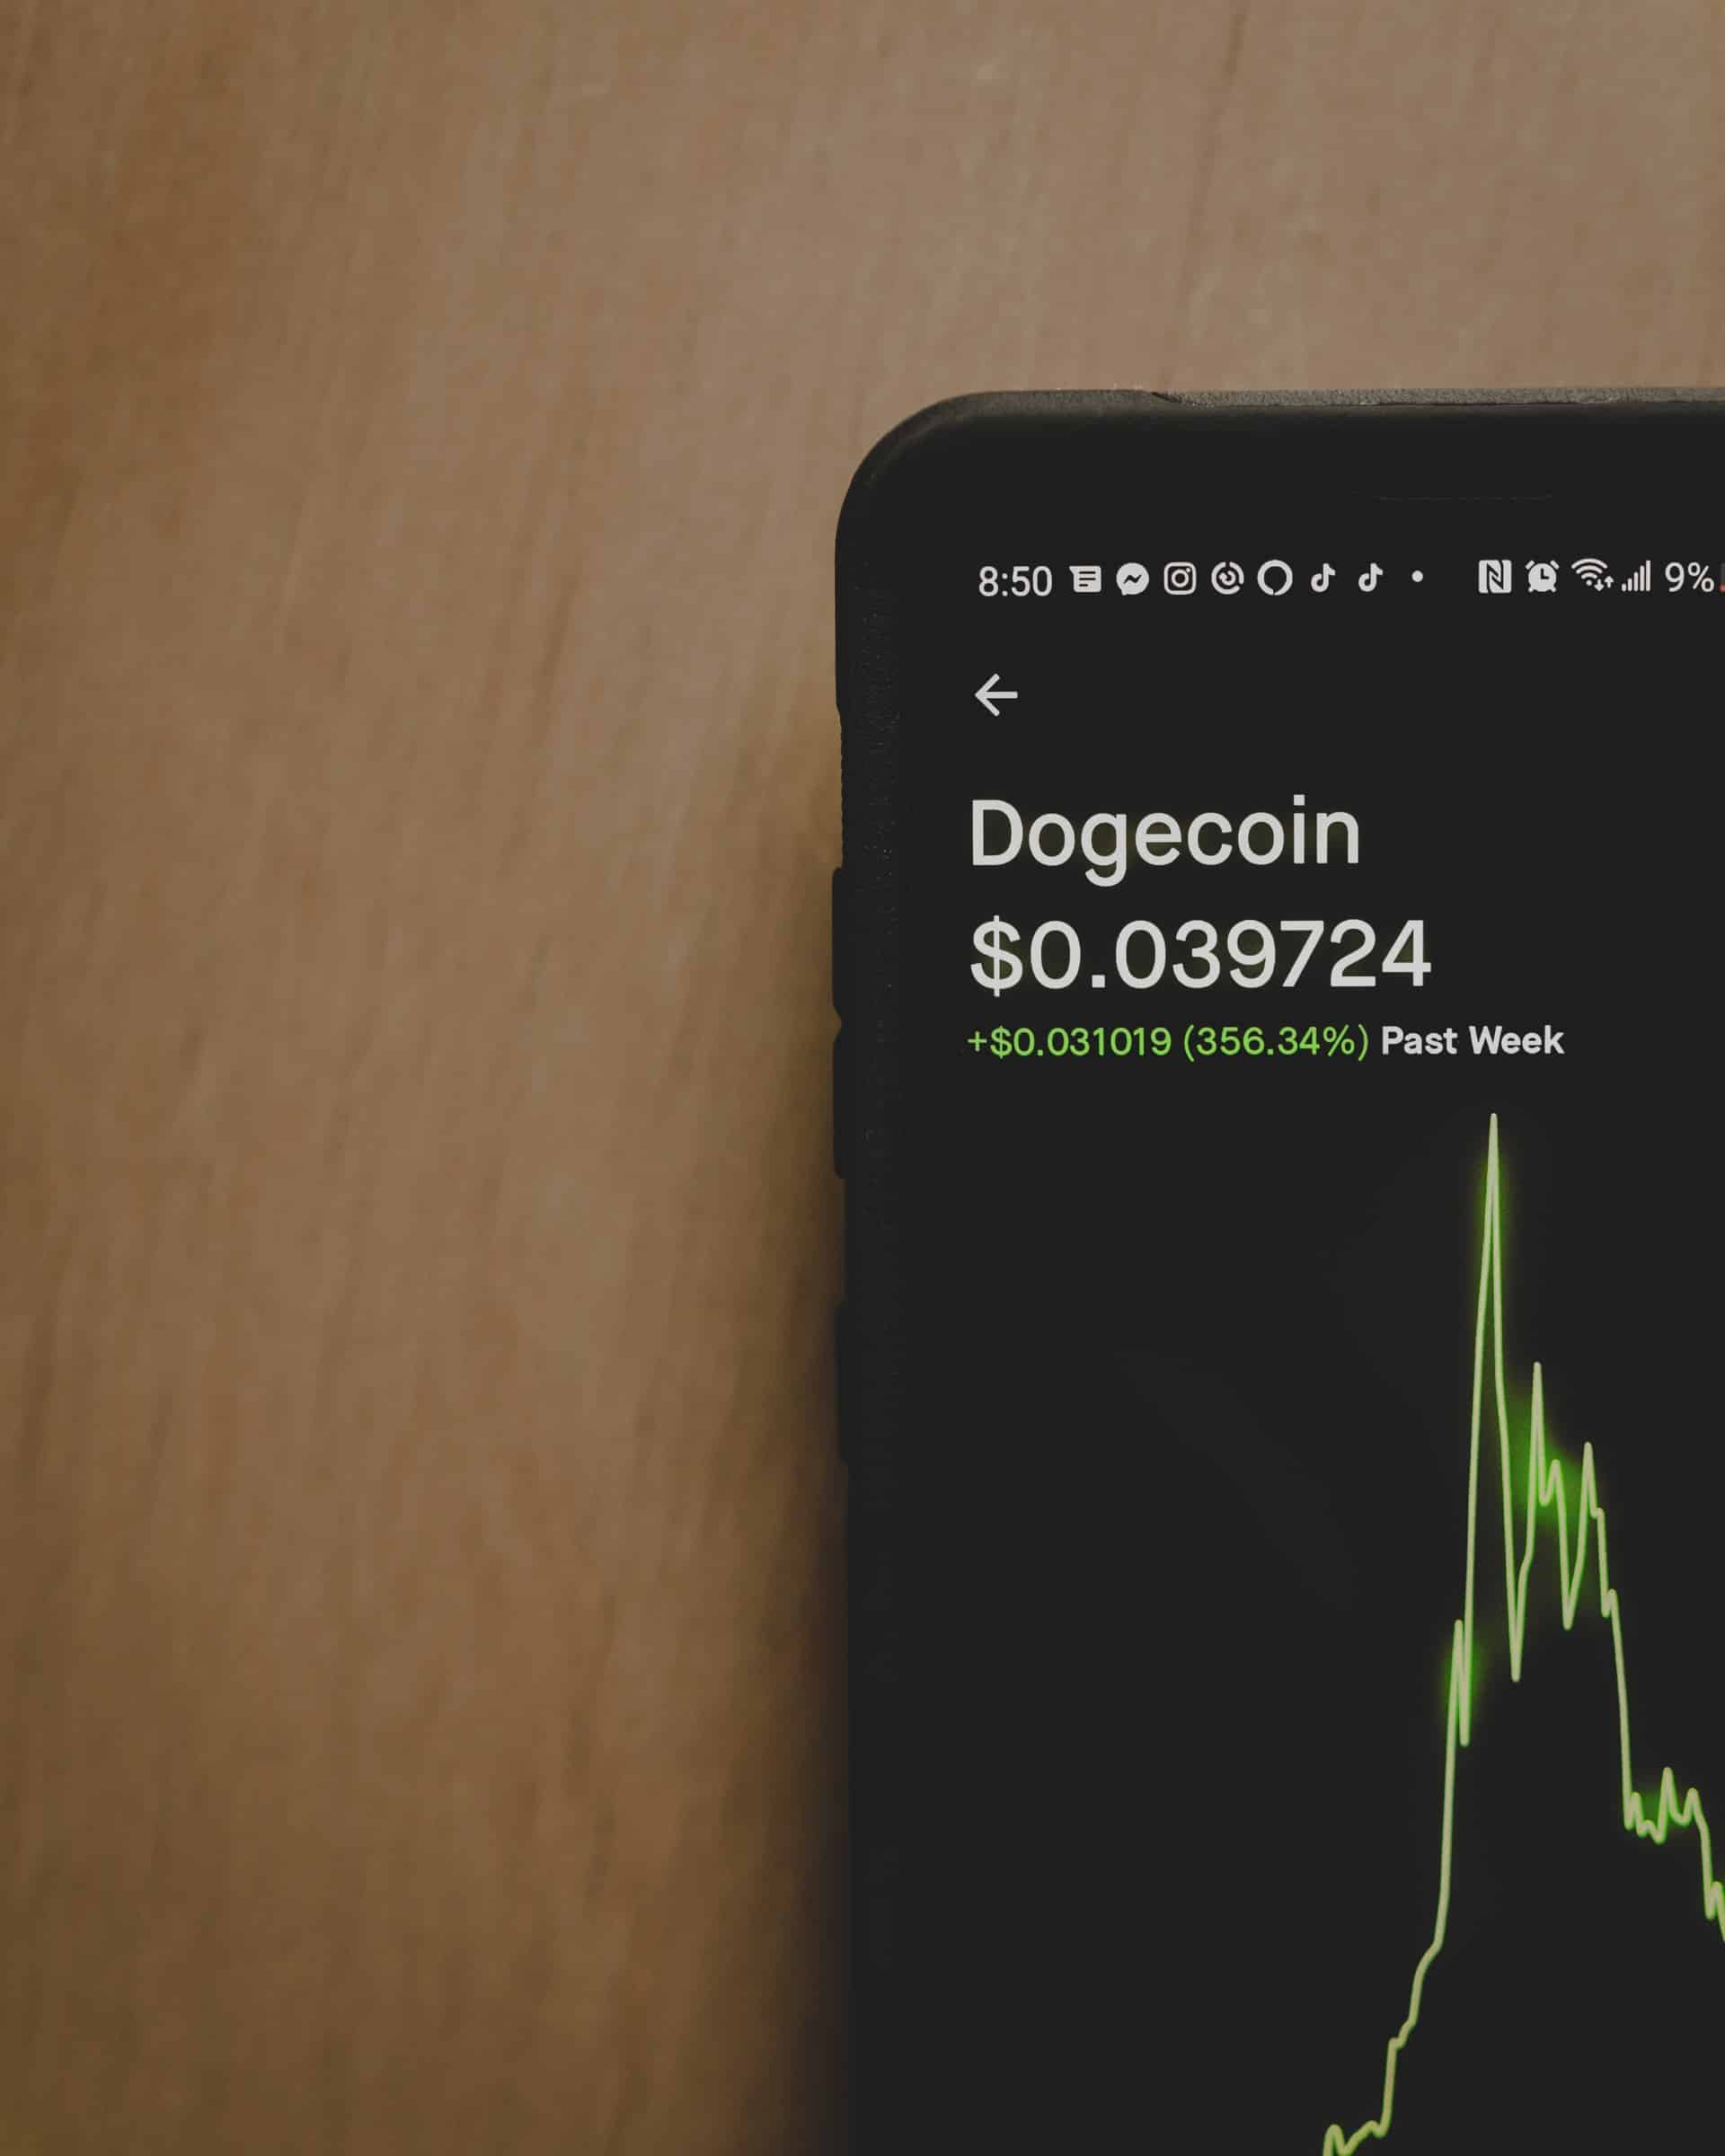 Le Dogecoin : faut-il investir dans la crypto-monnaie « blague » ?